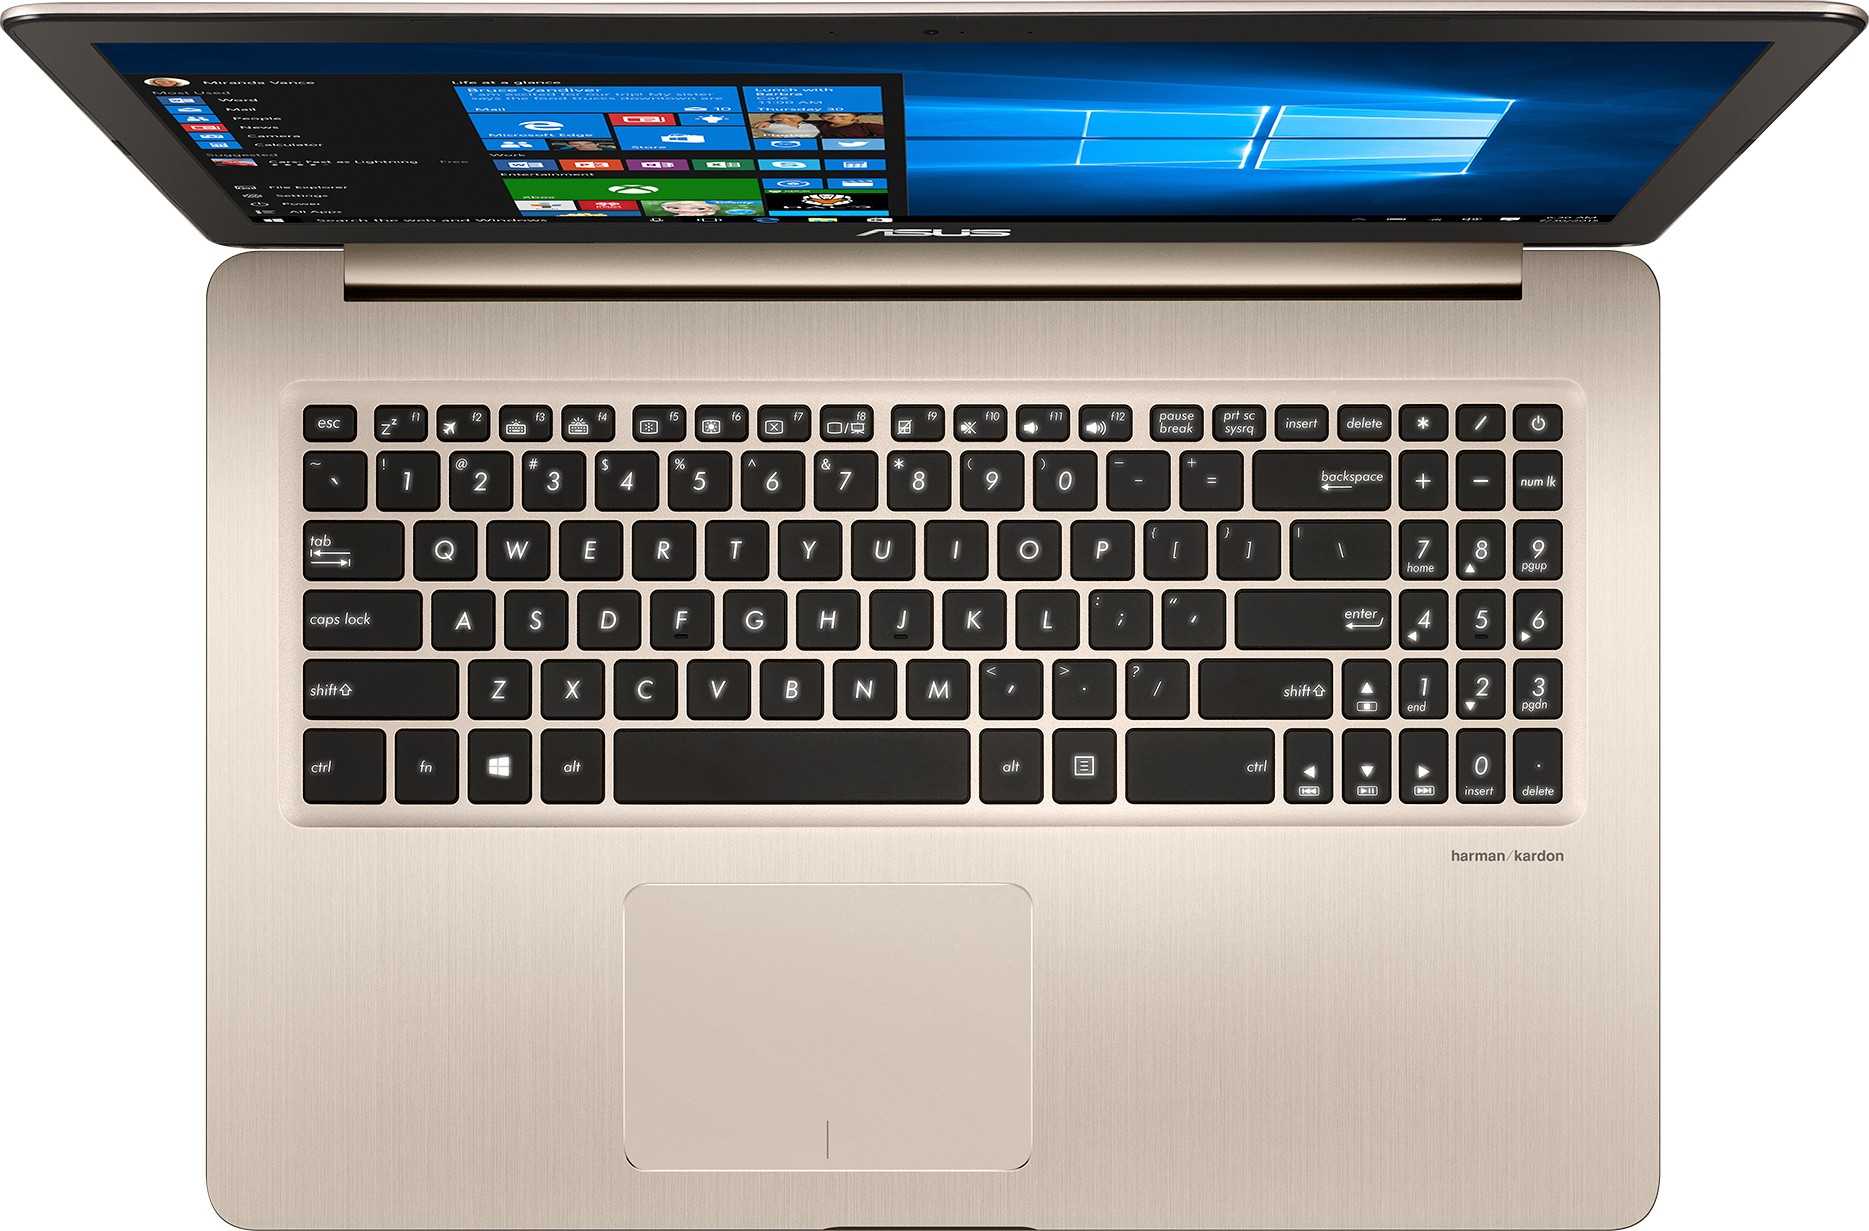 Ноутбук Asus VivoBook Pro 15 N580VD (N580VD-DM045T) Gold - подробные характеристики обзоры видео фото Цены в интернет-магазинах где можно купить ноутбук Asus VivoBook Pro 15 N580VD (N580VD-DM045T) Gold